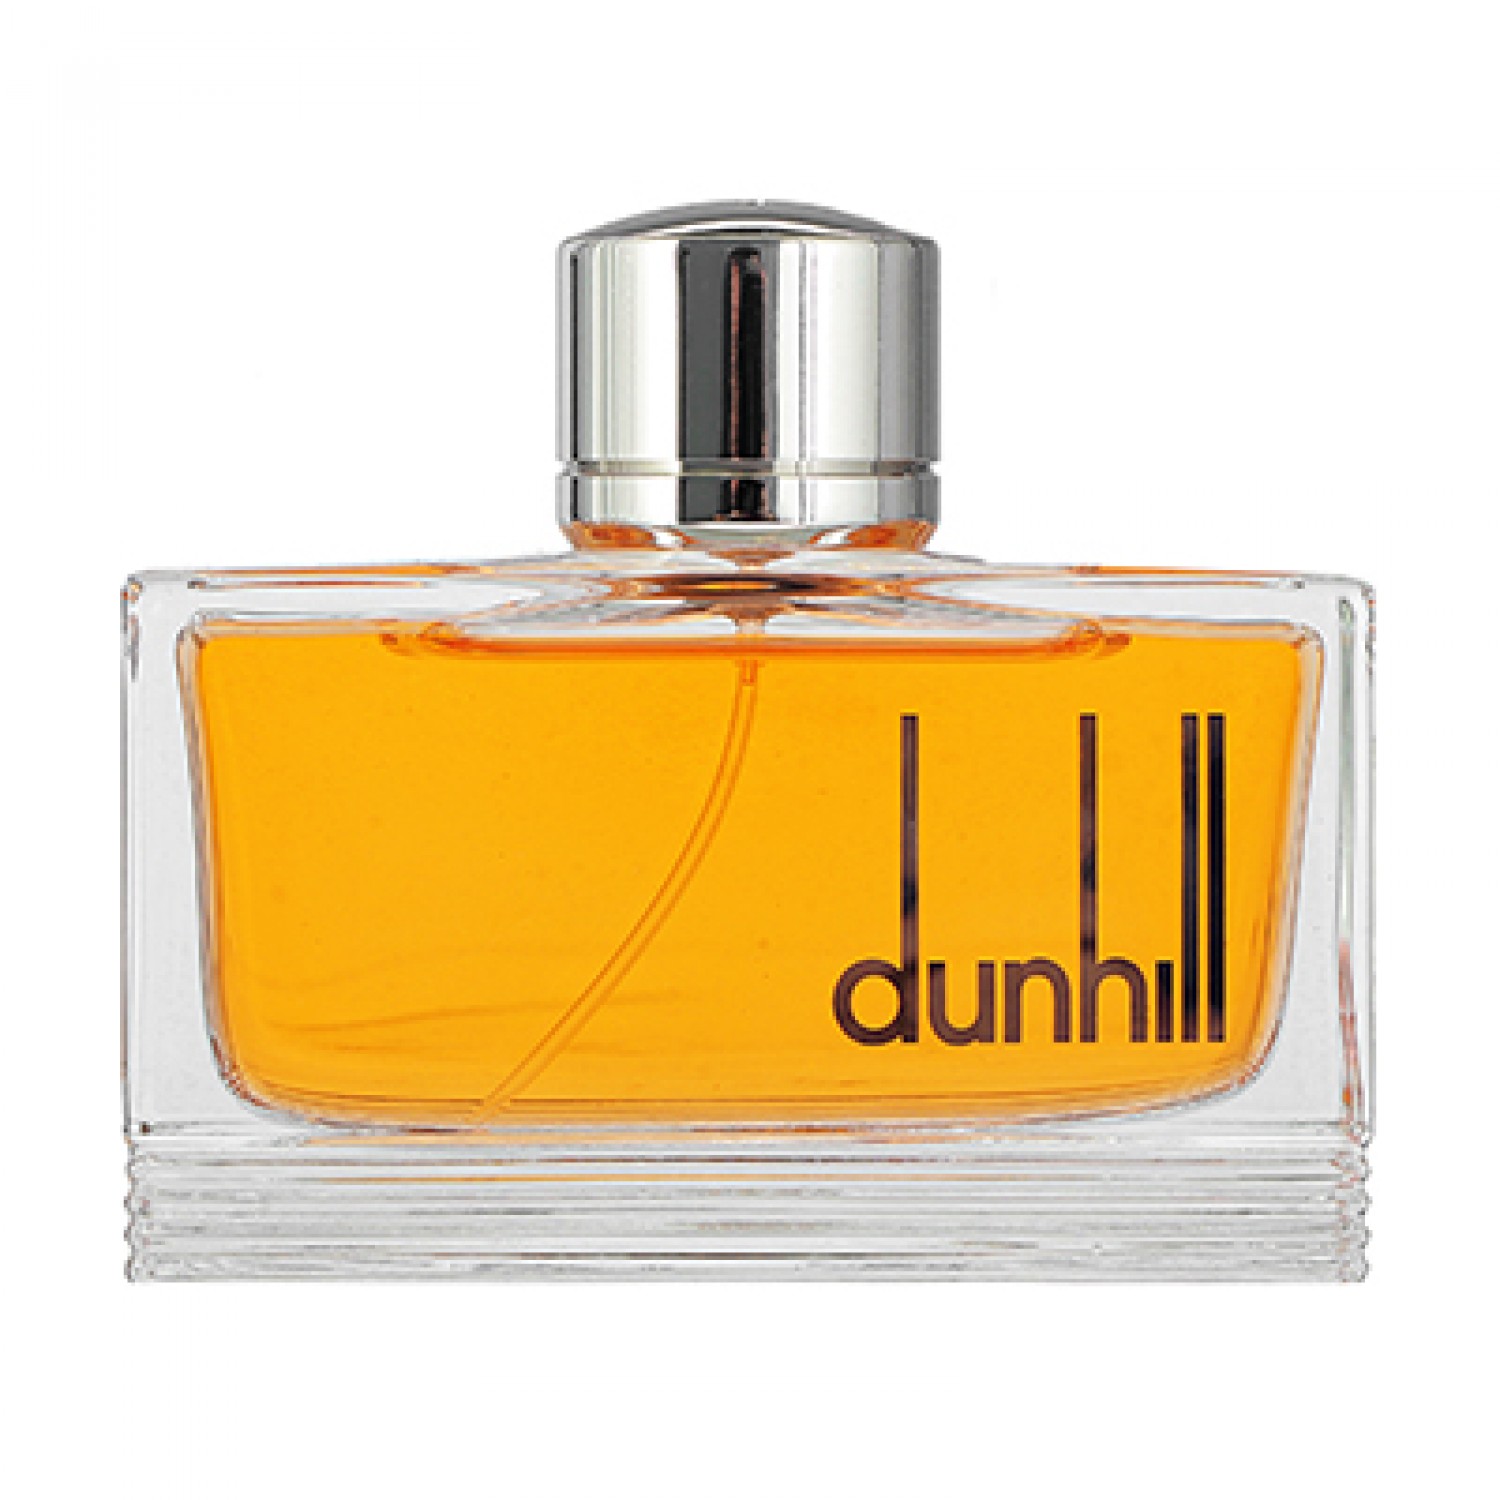 Dunhill Pursuit 75 ml EDT For Men - 2795 TK (100% Original)